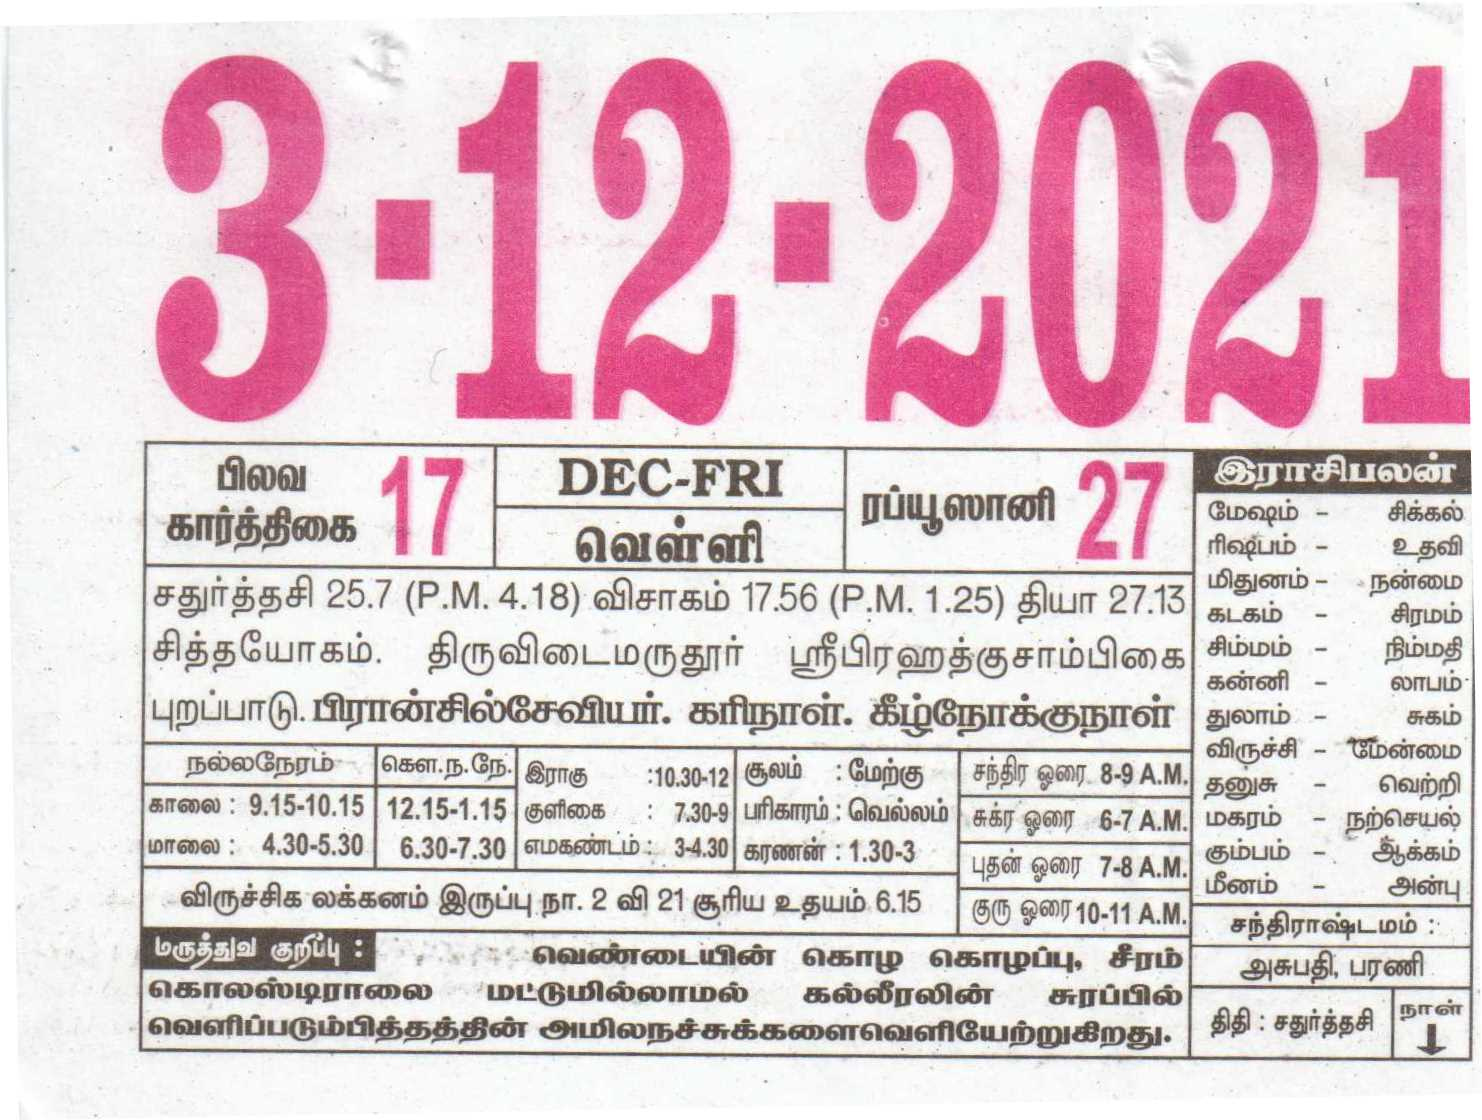 03-12-2021 Daily Calendar | Date 03 , January Daily Tear November 2021 Islamic Calendar